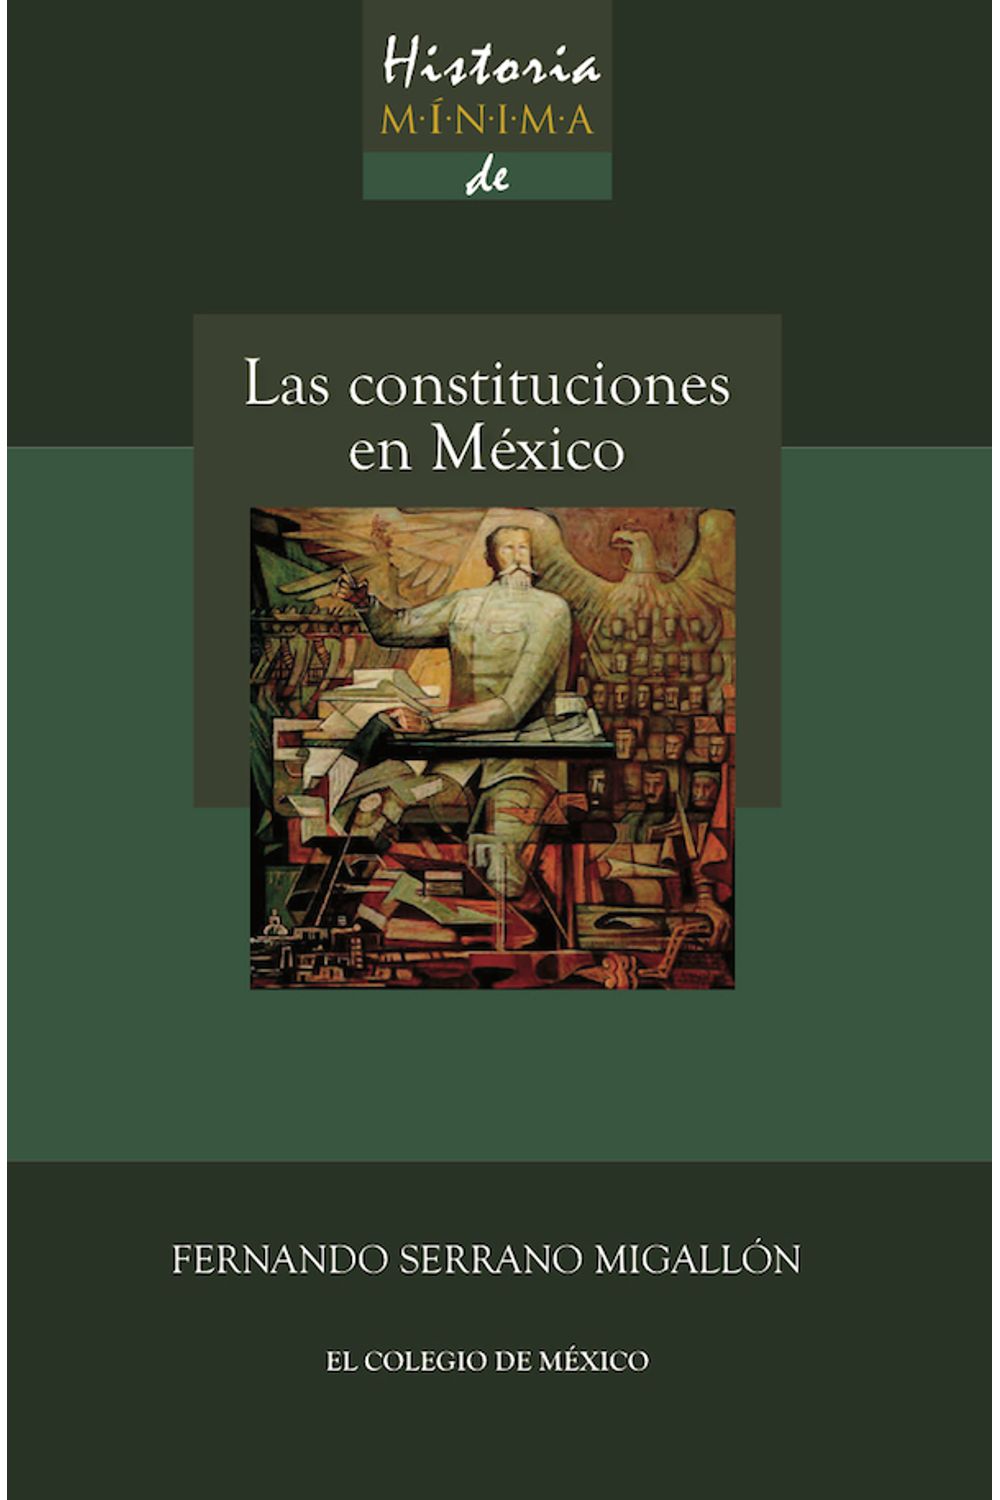 bm-historia-minima-de-las-constituciones-en-mexico-el-colegio-de-mexico-9786074624267